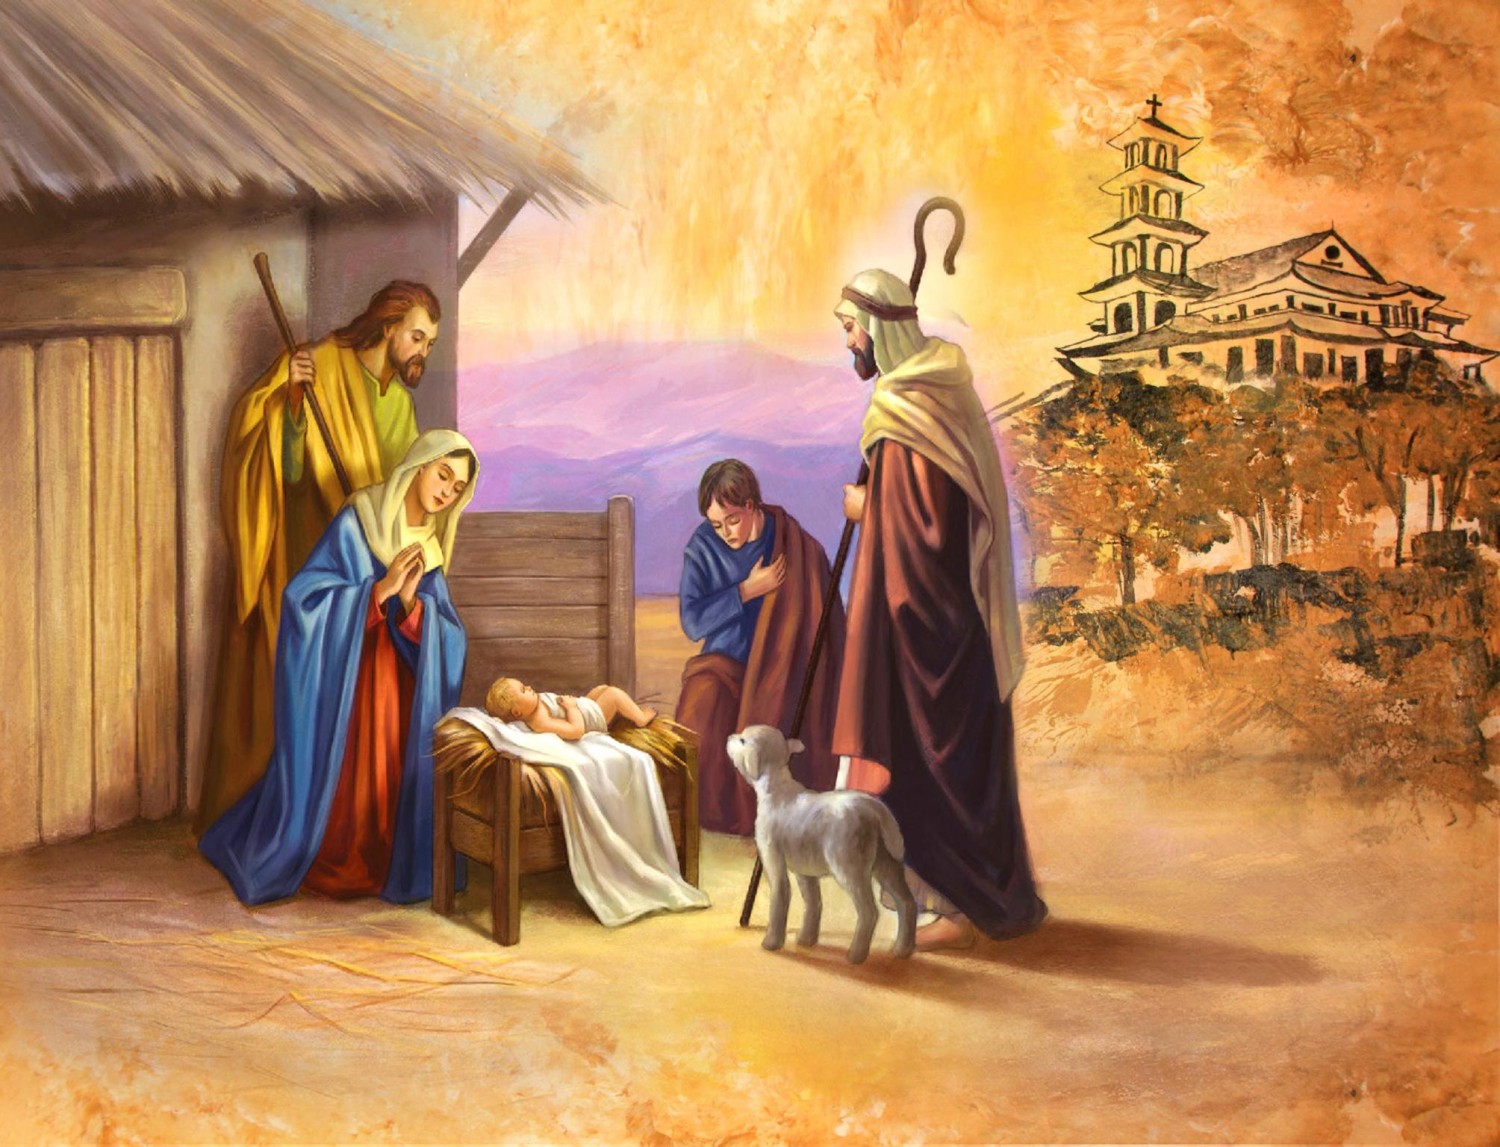 Thiệp chúc mừng Lễ Giáng Sinh và Năm mới của Đức Giám mục Giáo phận